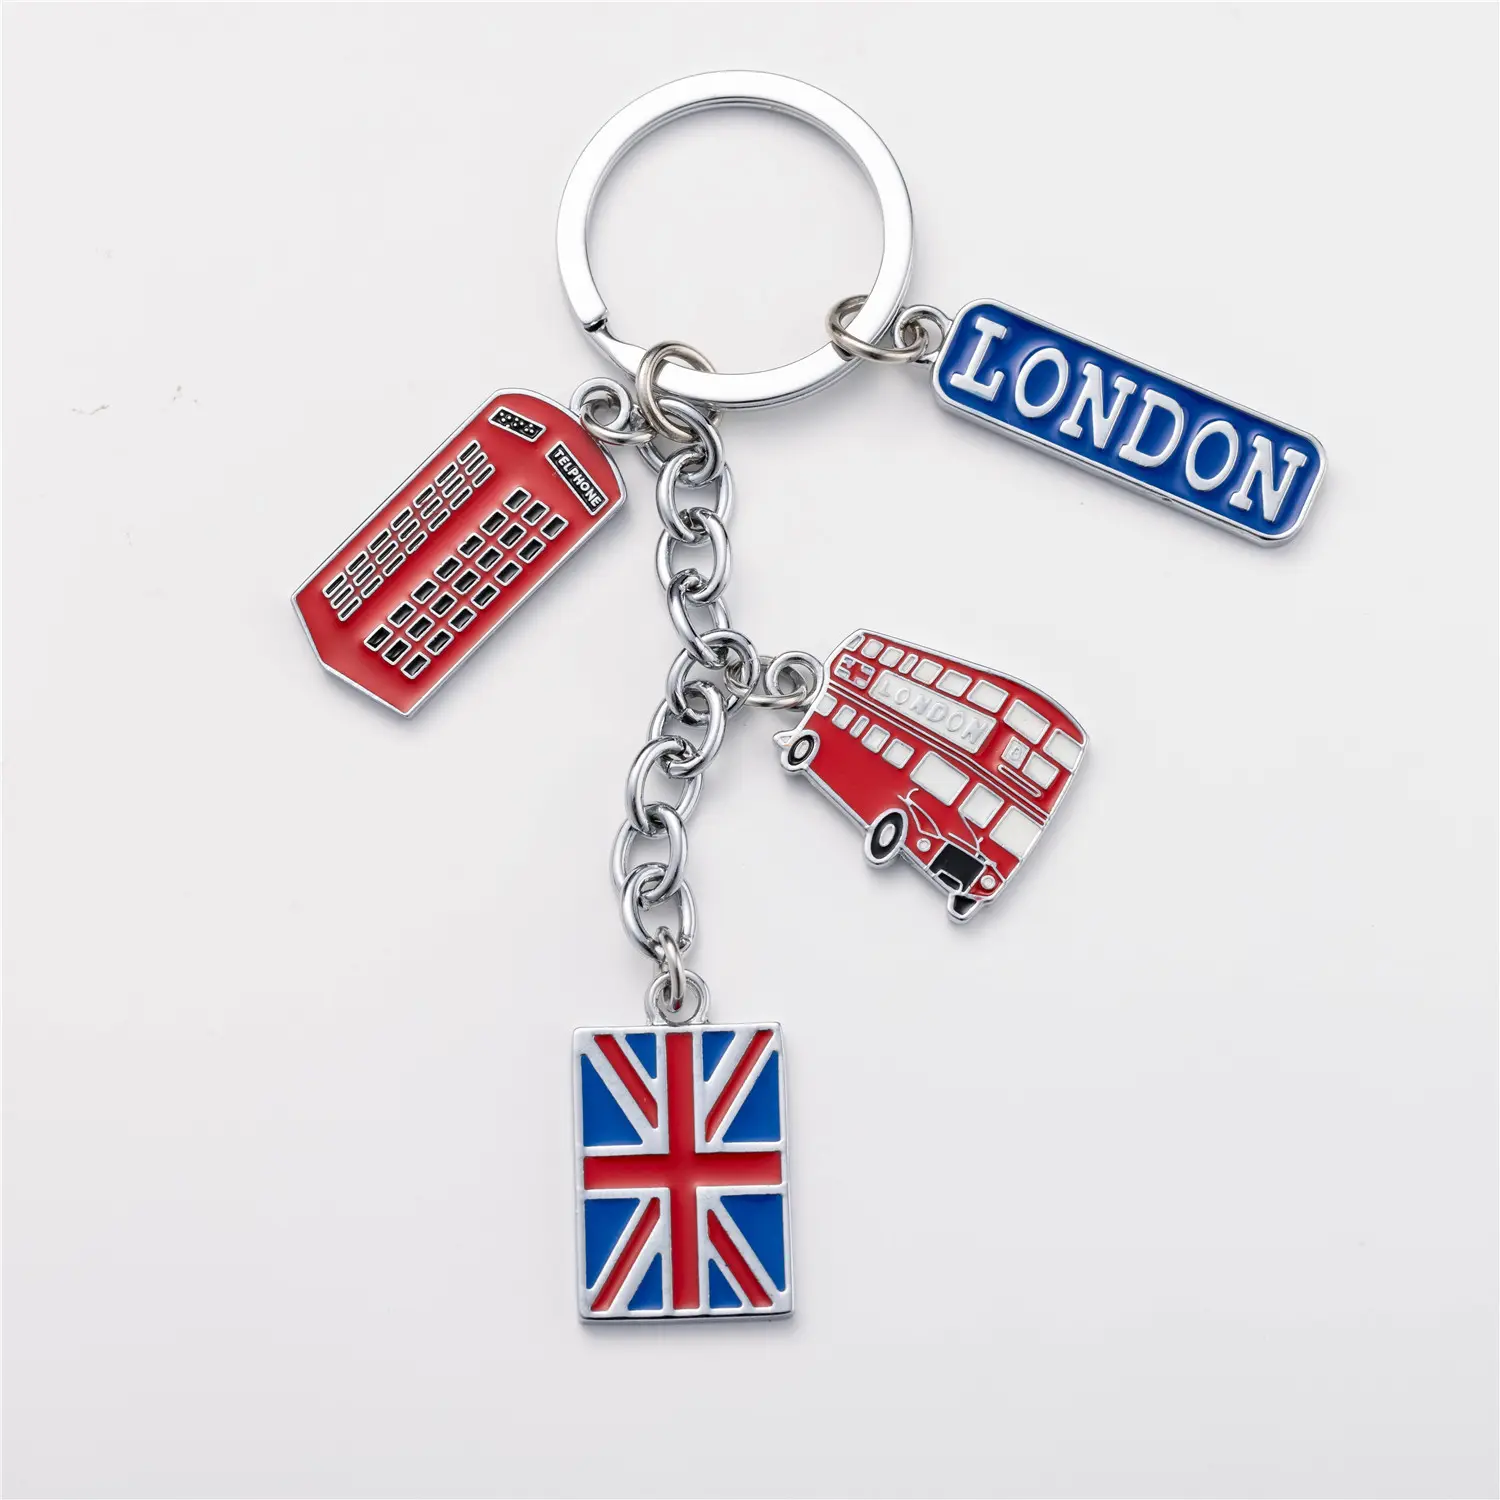 Drapeau britannique Landmark Souvenir rouge royaume-uni Souvenir cadeau porte-clés métal britannique Londres Bus porte-clés voiture porte-clés sac breloques